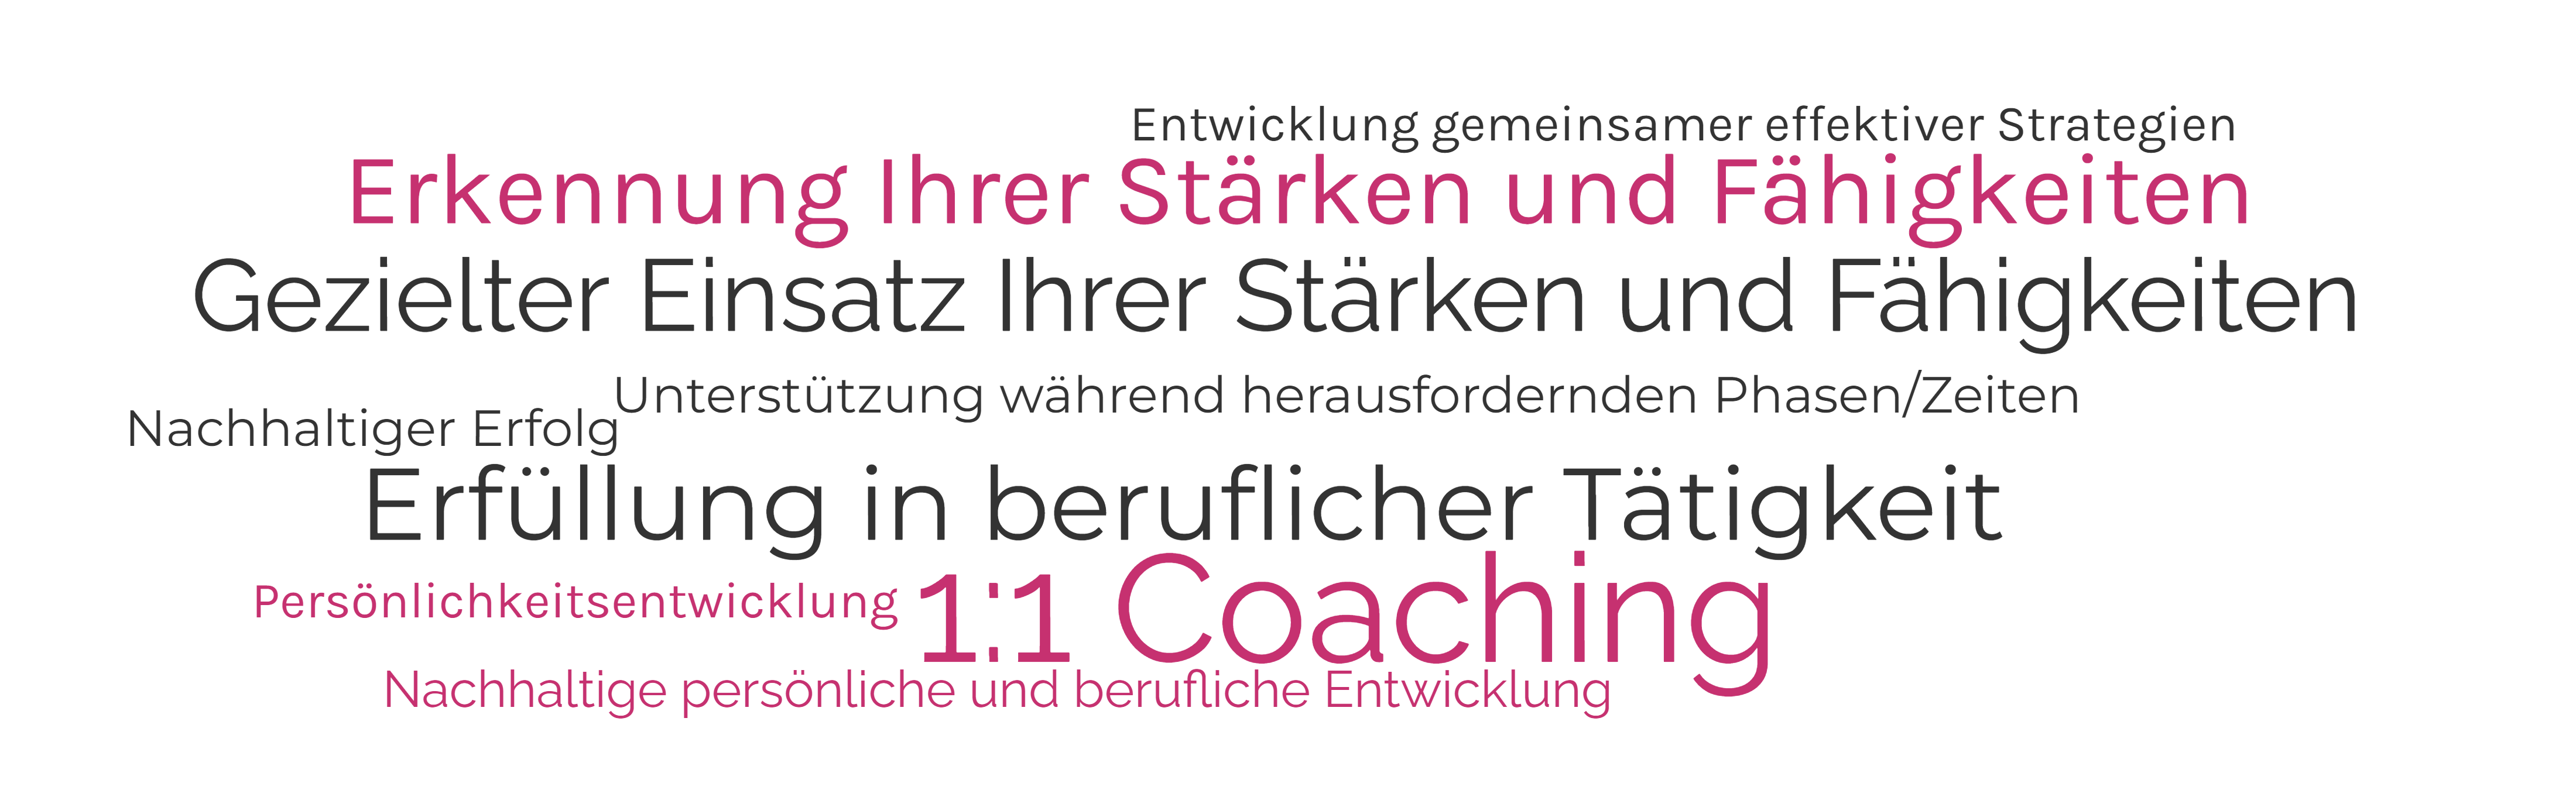 Businesscoaching-wordcloud-pink-schwarz